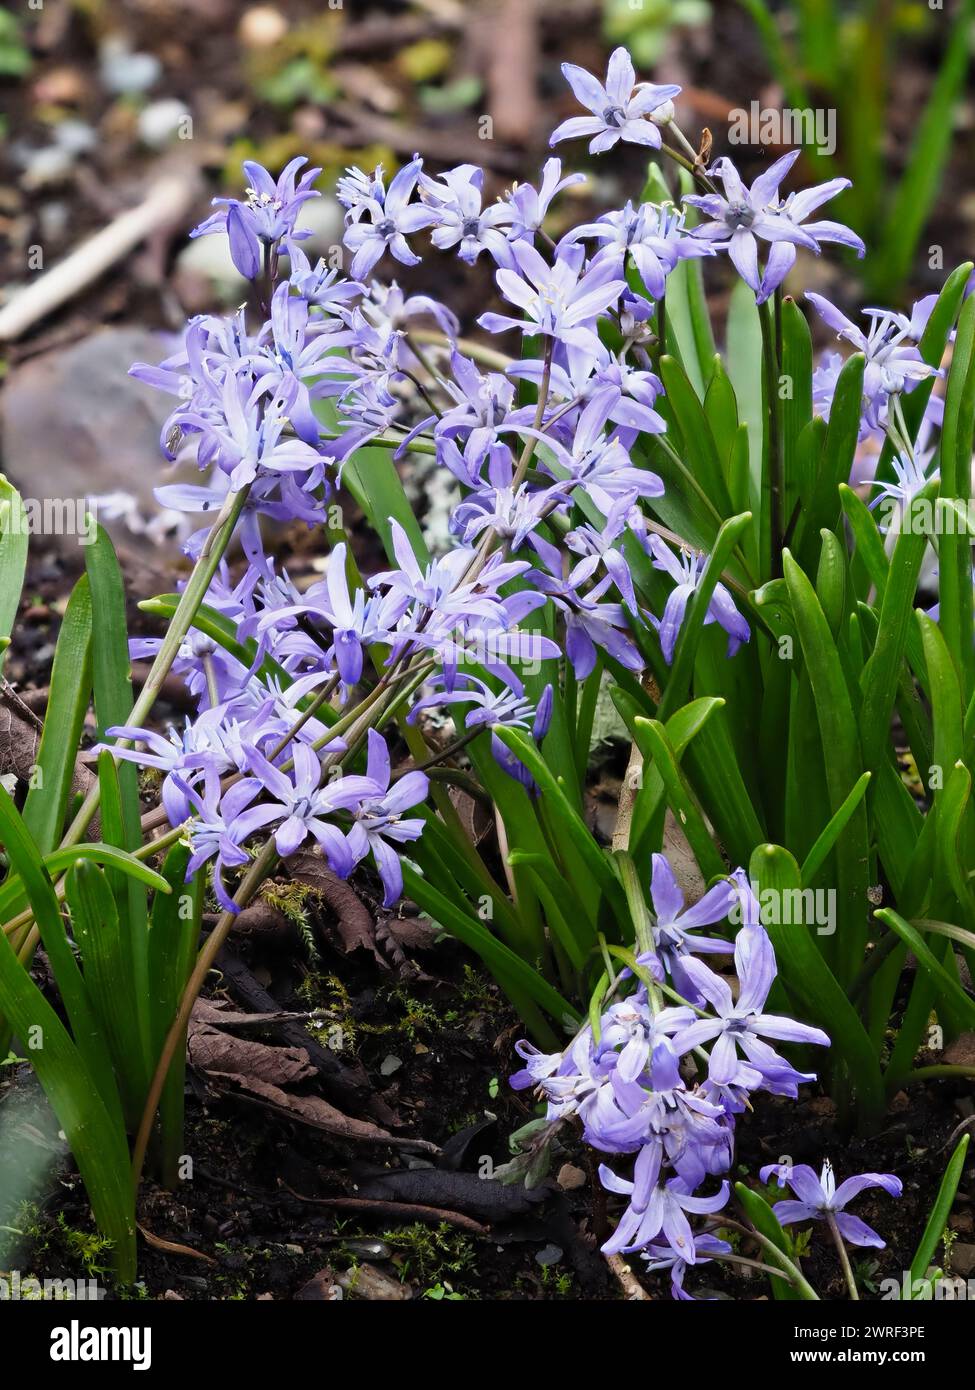 Fleurs bleu violet pâle de la courge alpine florissante au printemps, Scilla bifolia Banque D'Images